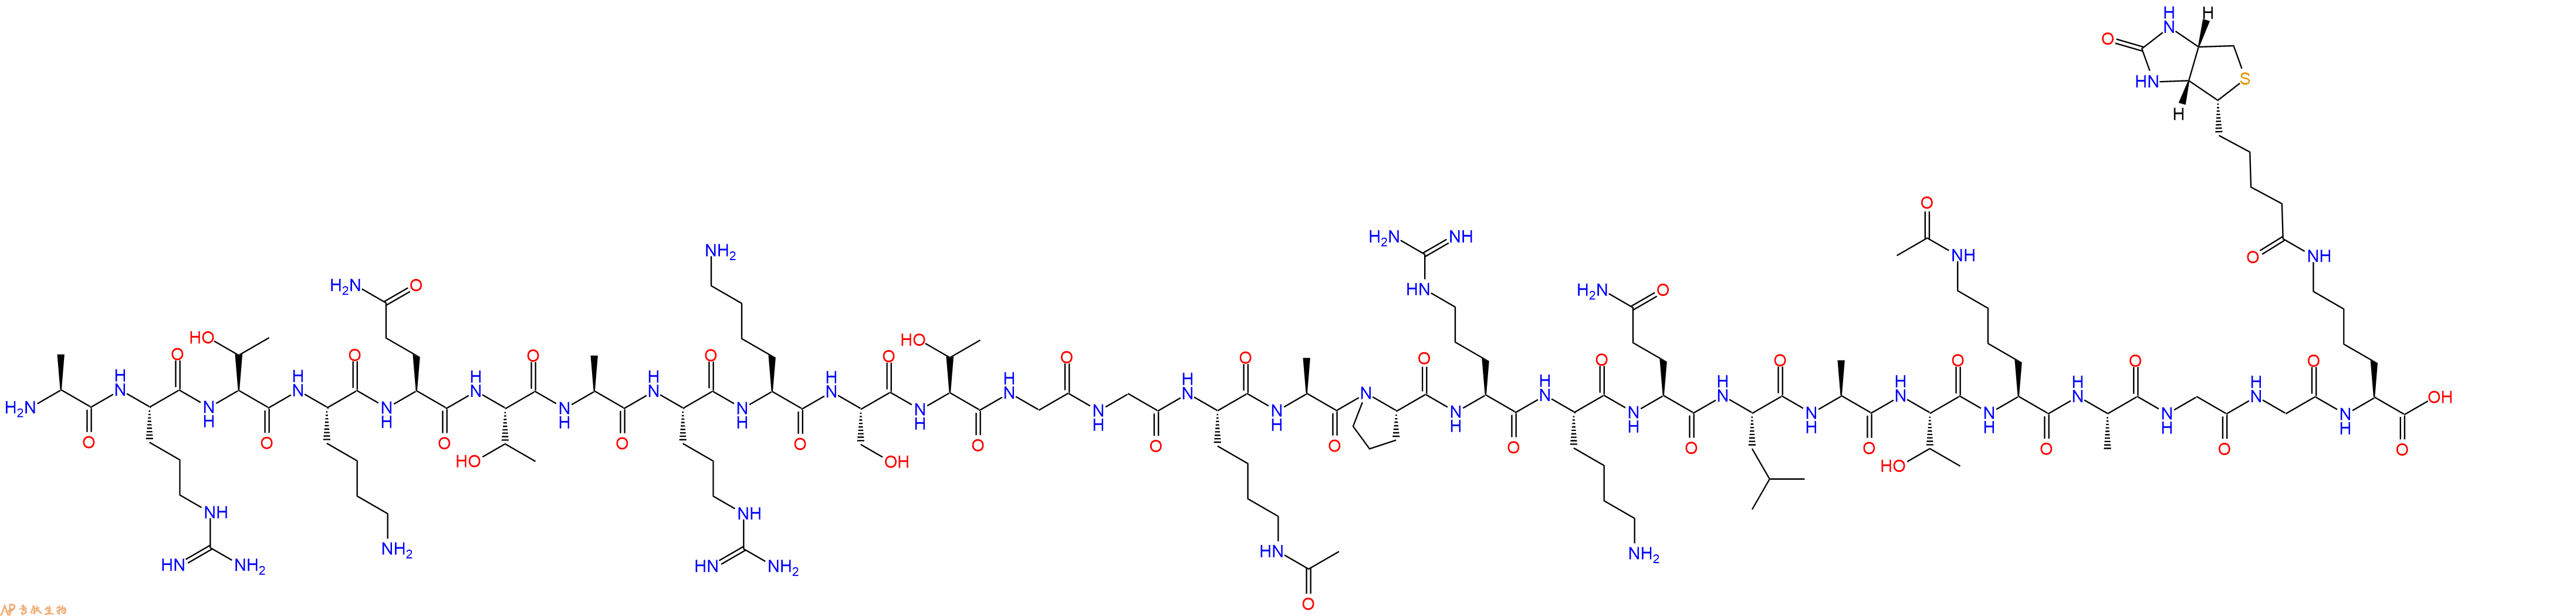 专肽生物产品组蛋白肽段[Lys(Ac)14/23]-Histone H3(1-24)-GGK(Bioti